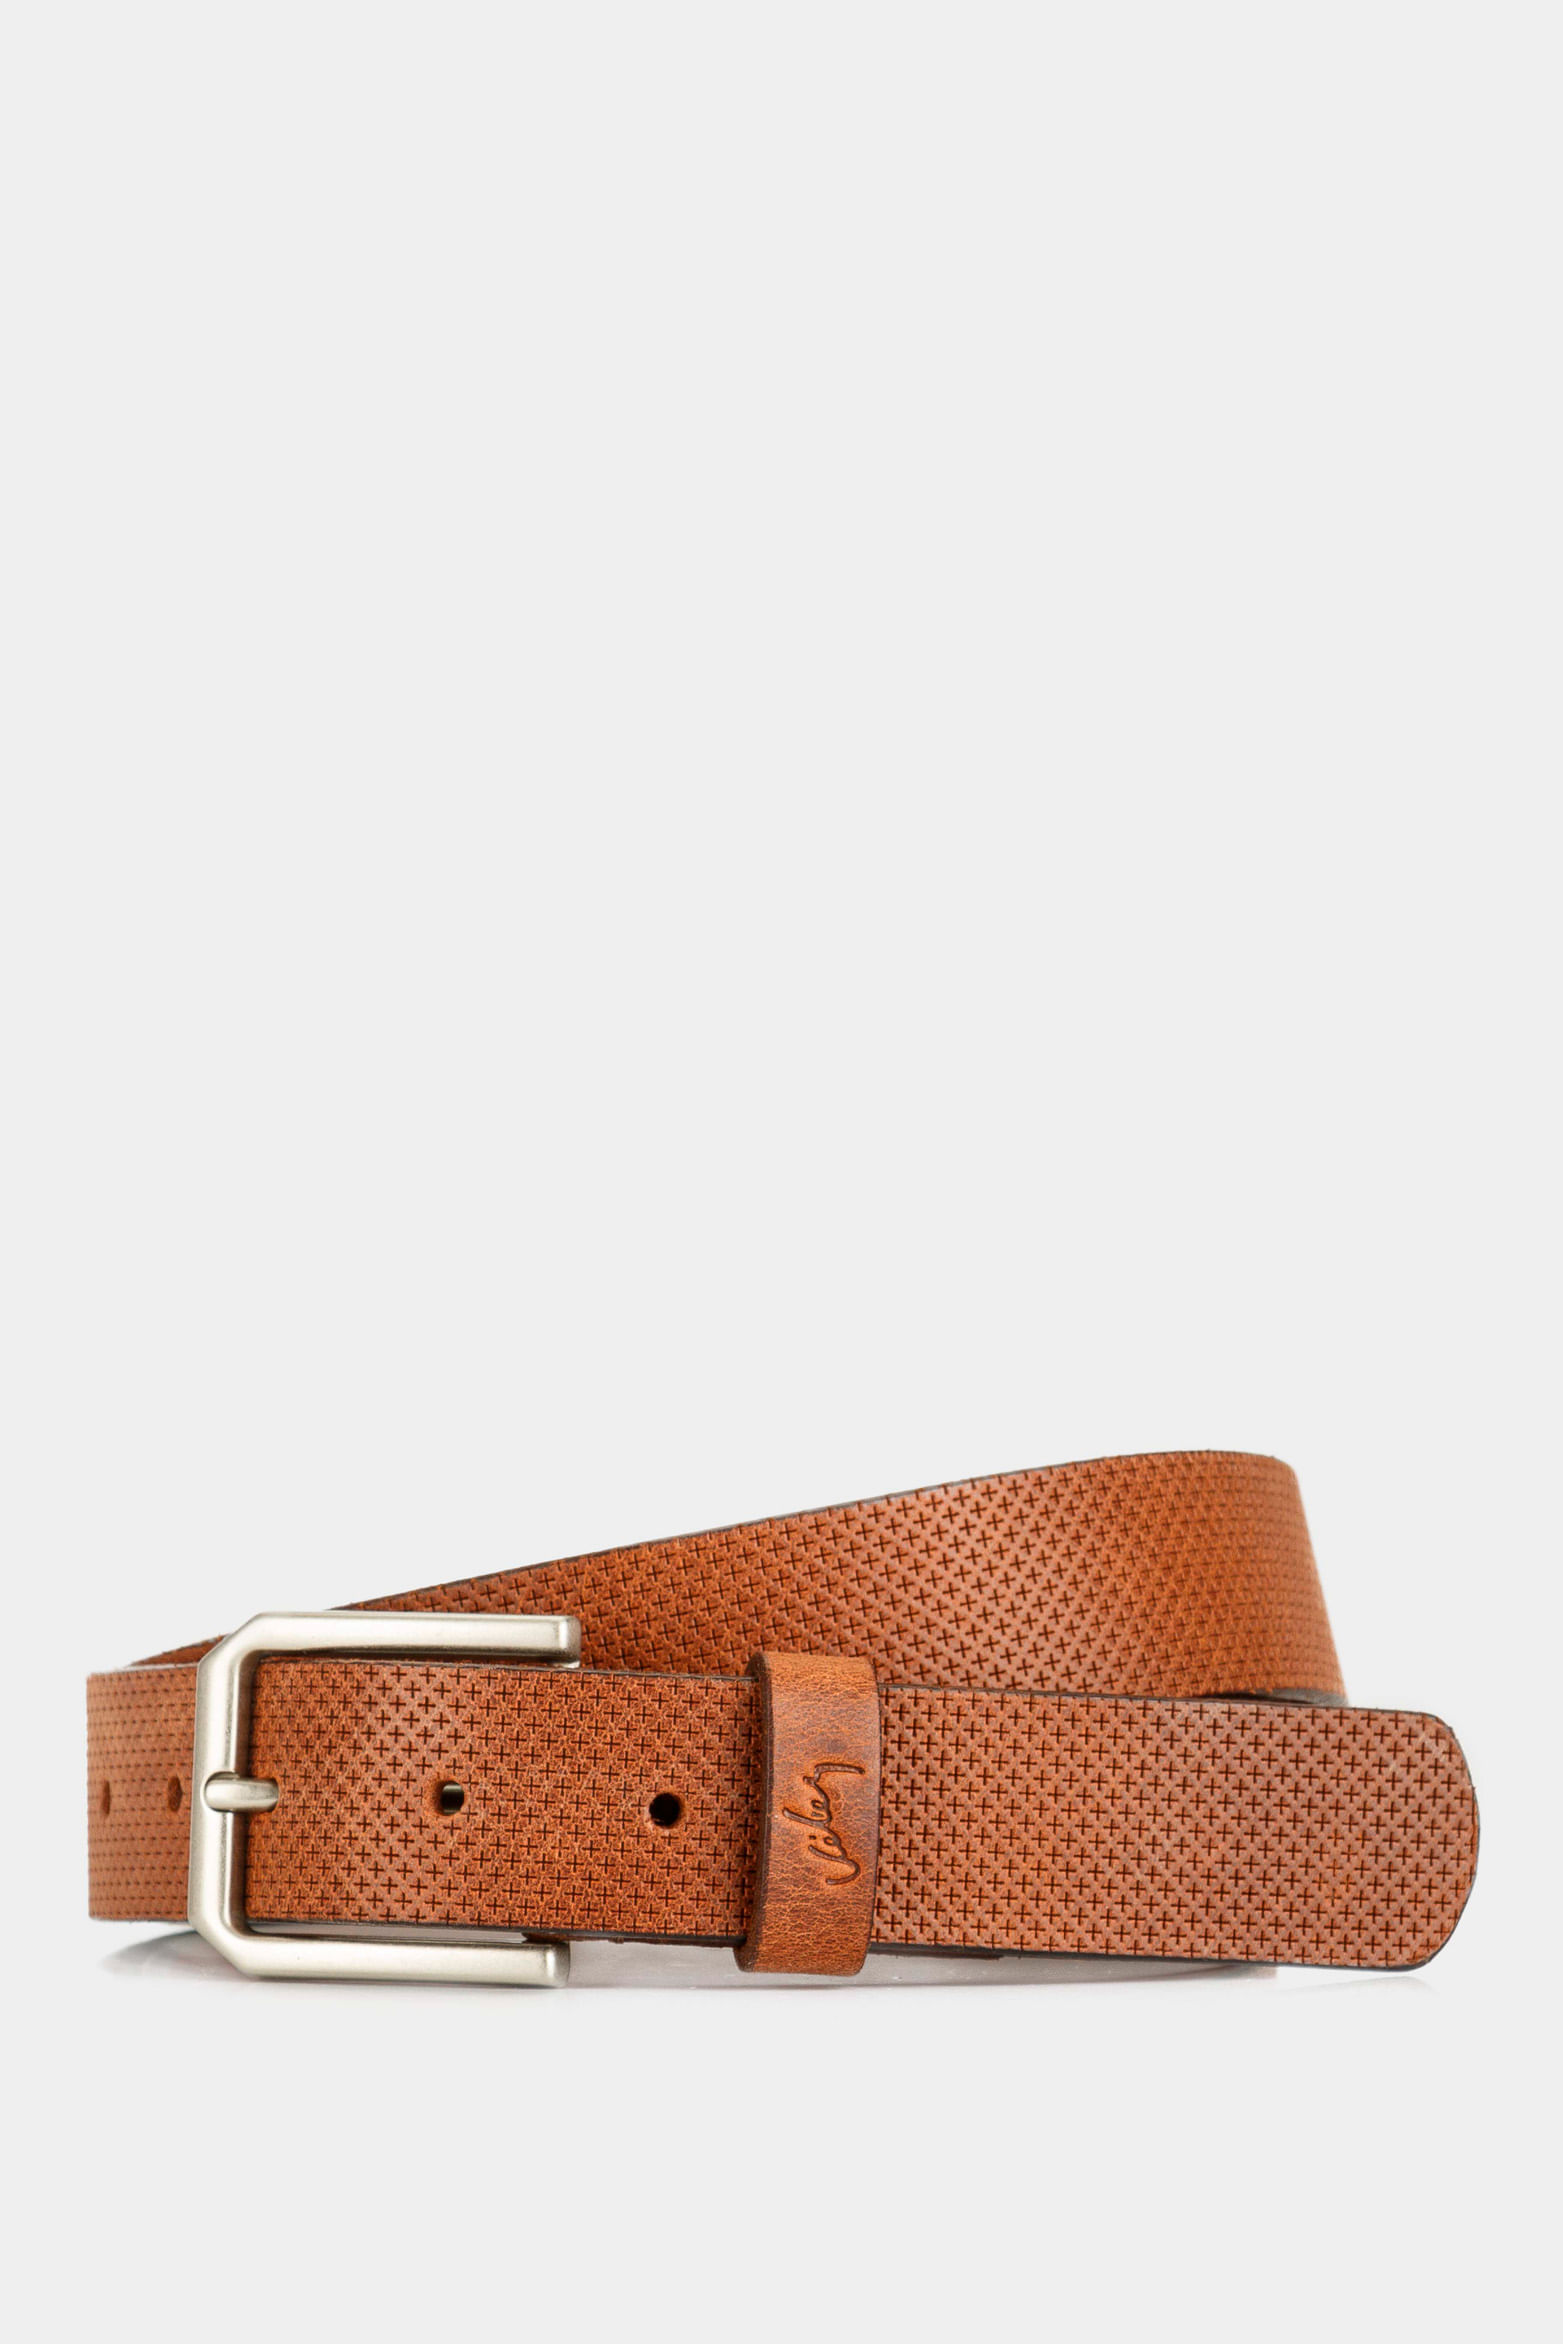  QWZYP Cinturones para hombre, correa de cuero de color rojo,  cinturones automáticos con hebilla para (color A, tamaño: 43.3 in) : Ropa,  Zapatos y Joyería